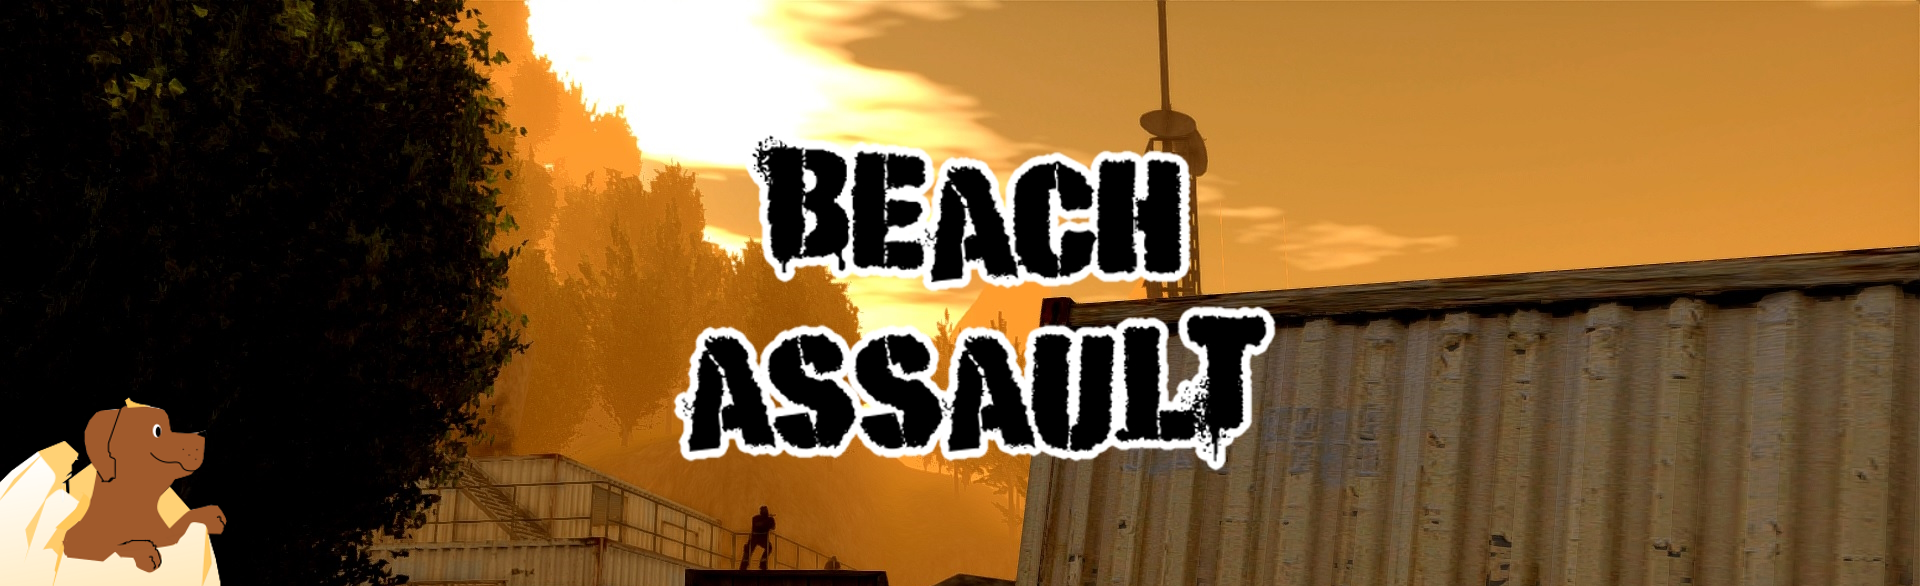 Beach Assault